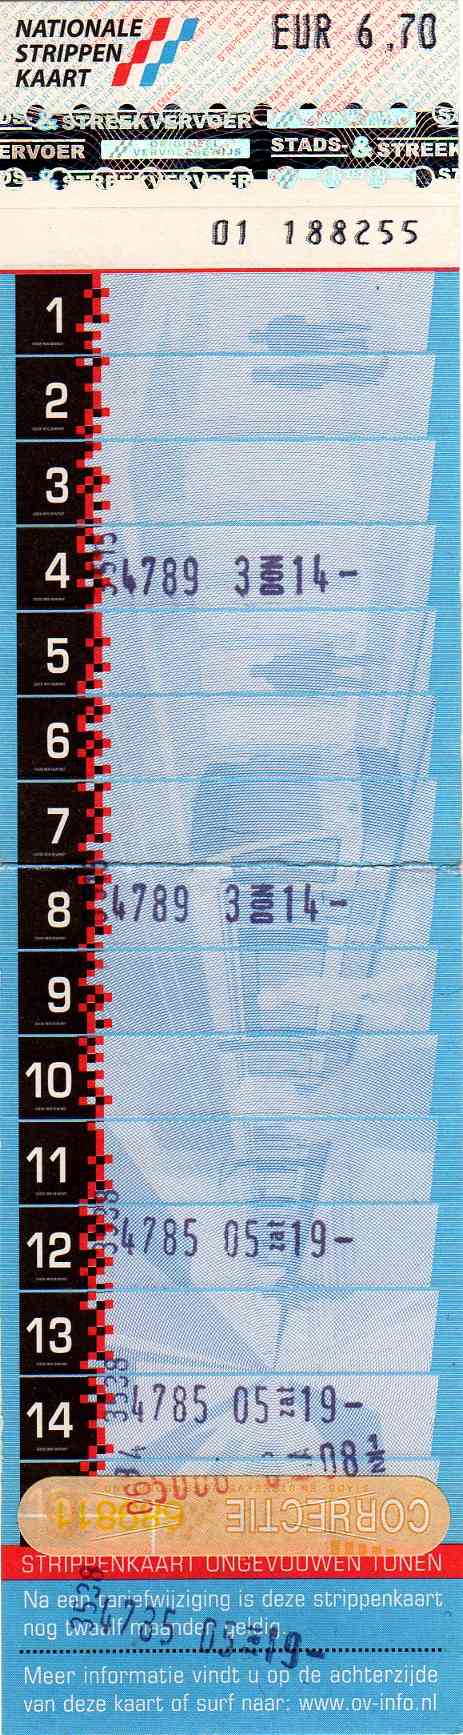 15-strip ticket